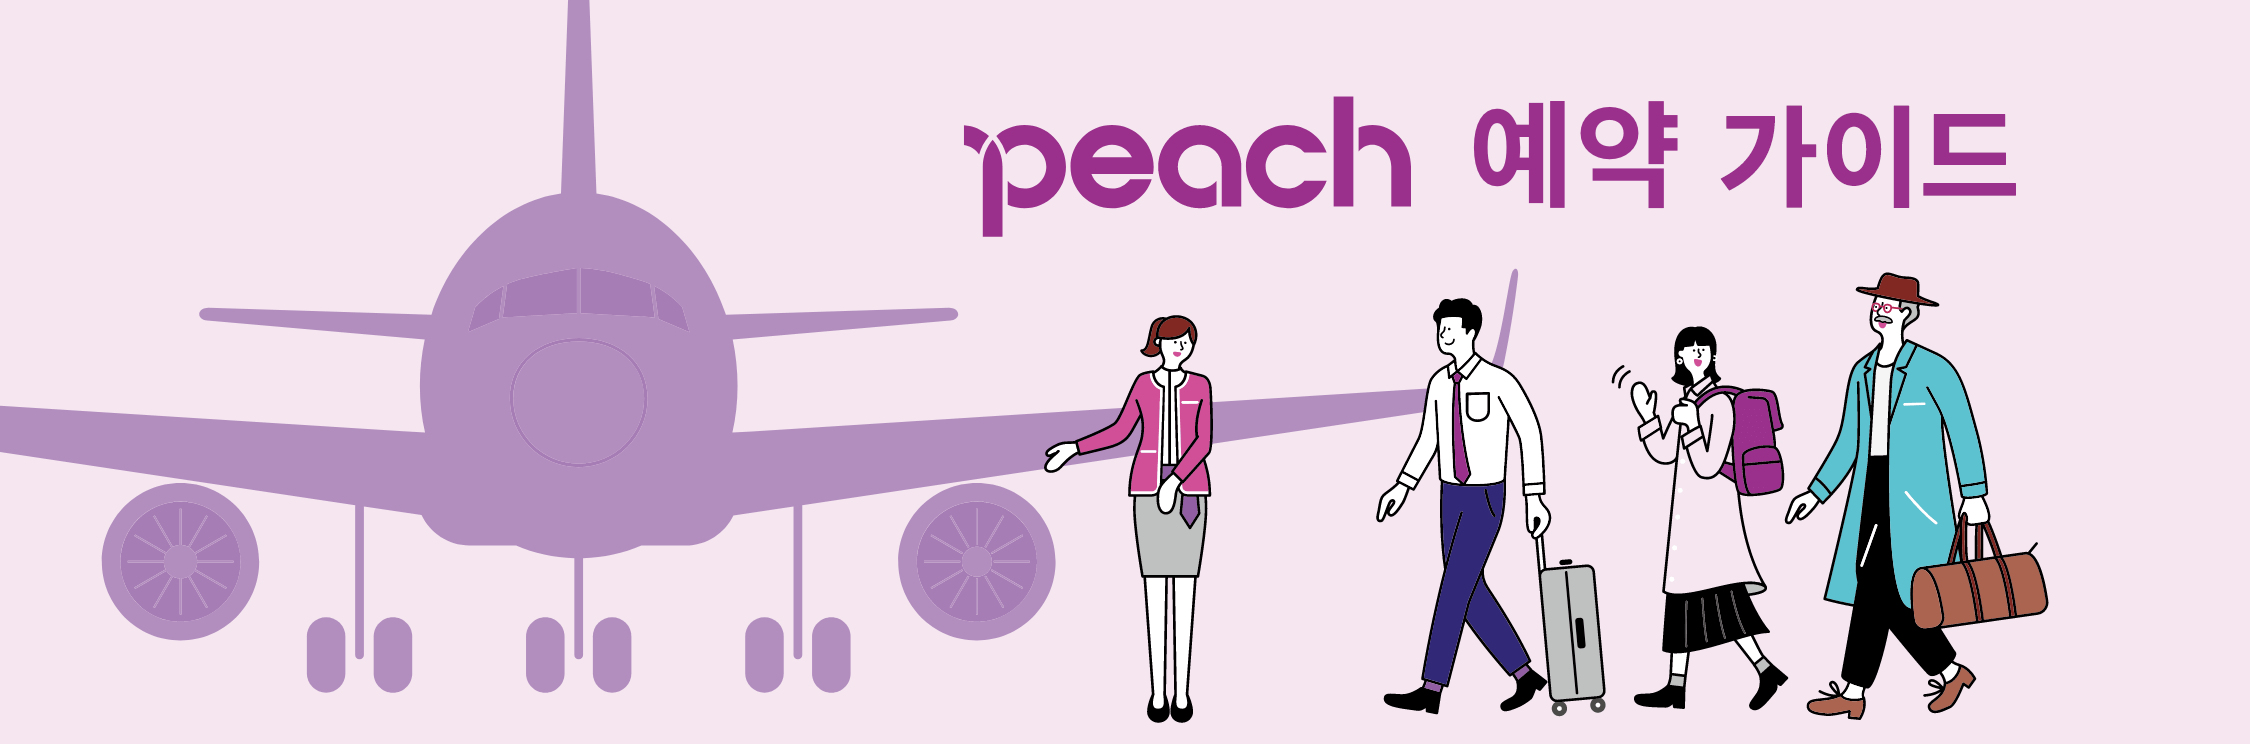 Peach 예약 가이드